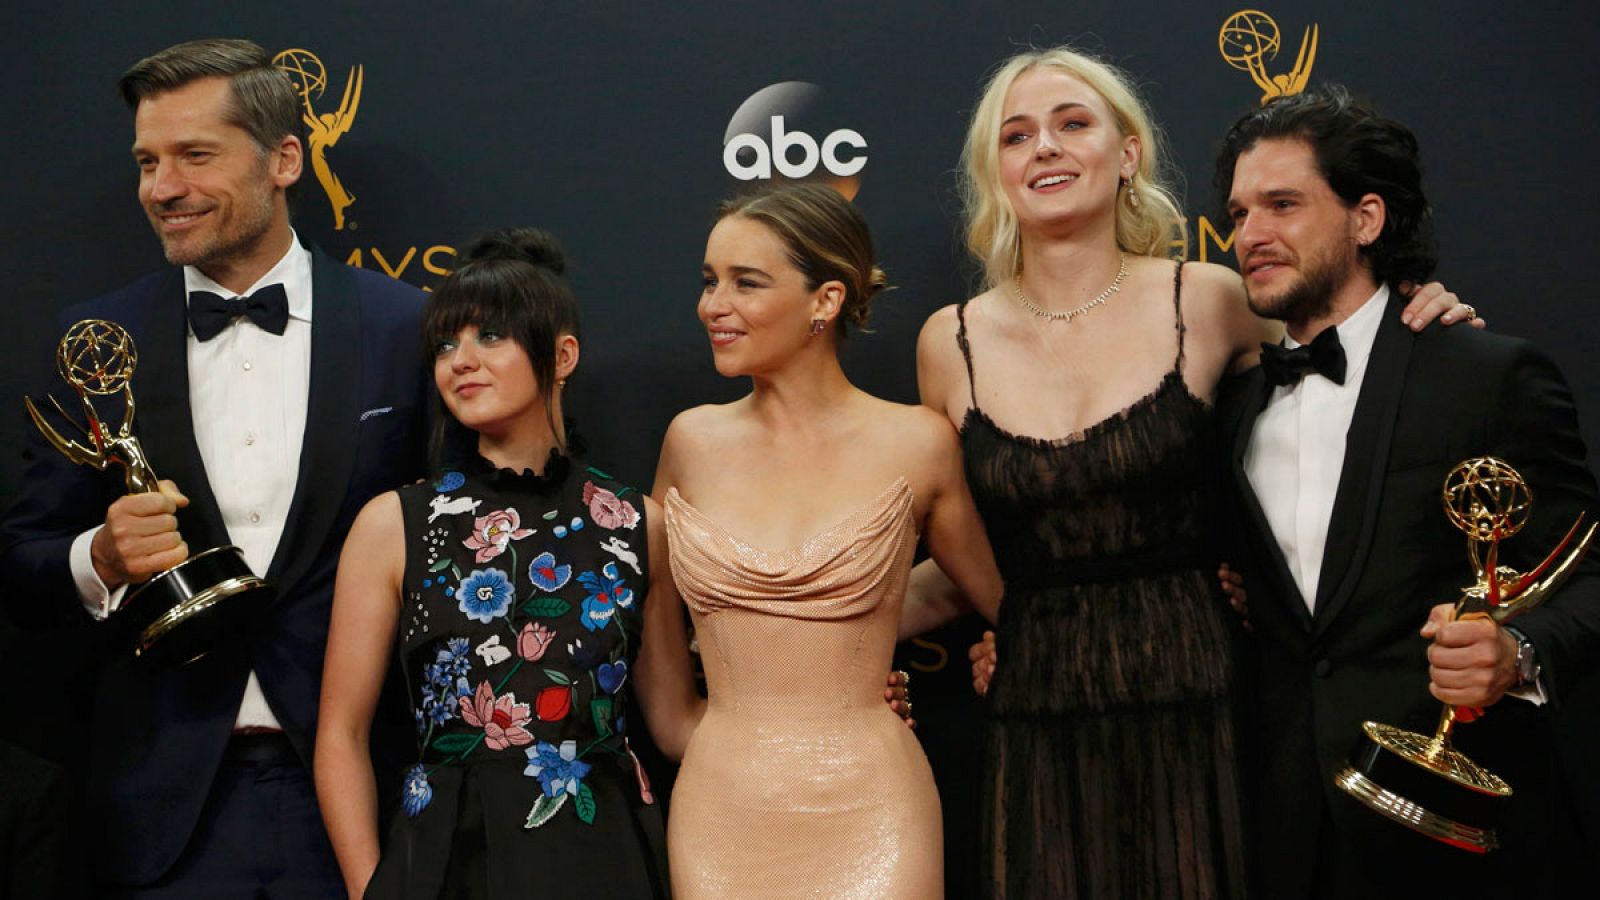 Nikolaj Coster-Waldau, Maisie Williams, Emilia Clarke, Sophie Turner y Kit Harrington, protagonistas de Juego de Tronos, celebran los premios obtenidos en los Emmy 2016.